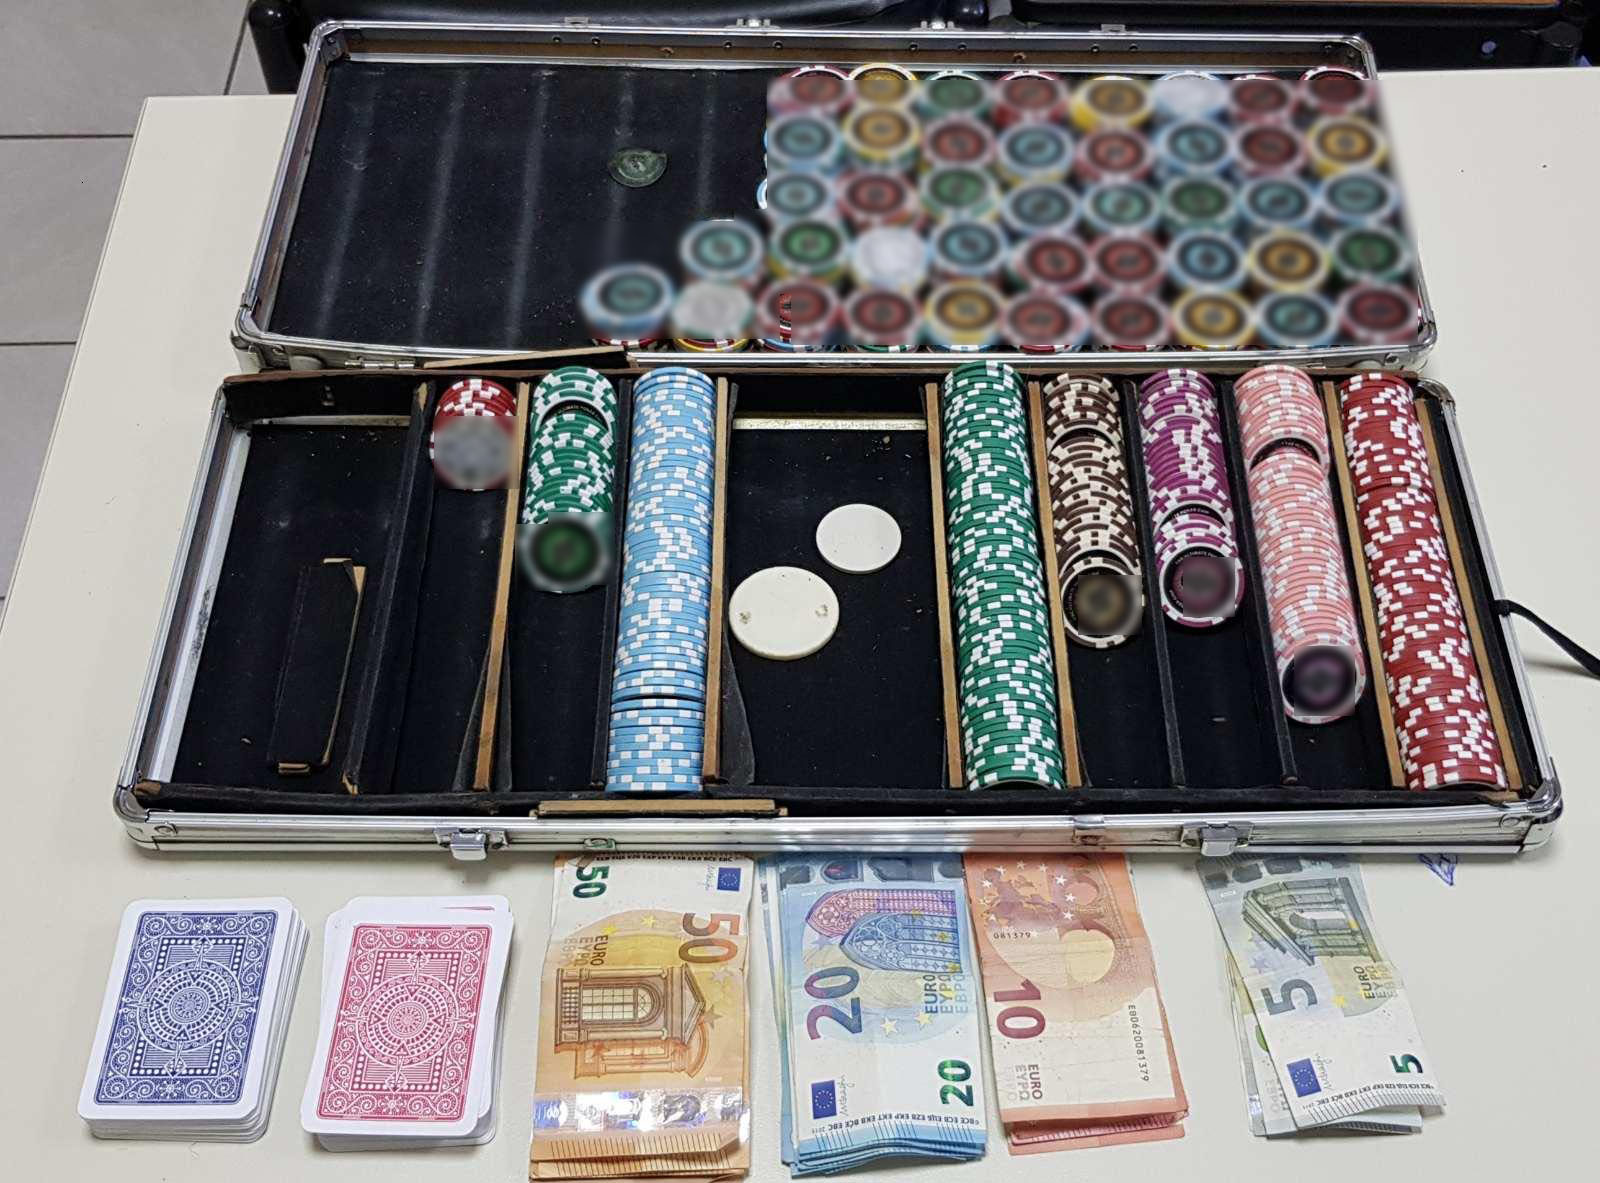 Συνελήφθησαν 11 άτομα για συμμετοχή σε παράνομο τυχερό παίγνιο στην Πτολεμαΐδα